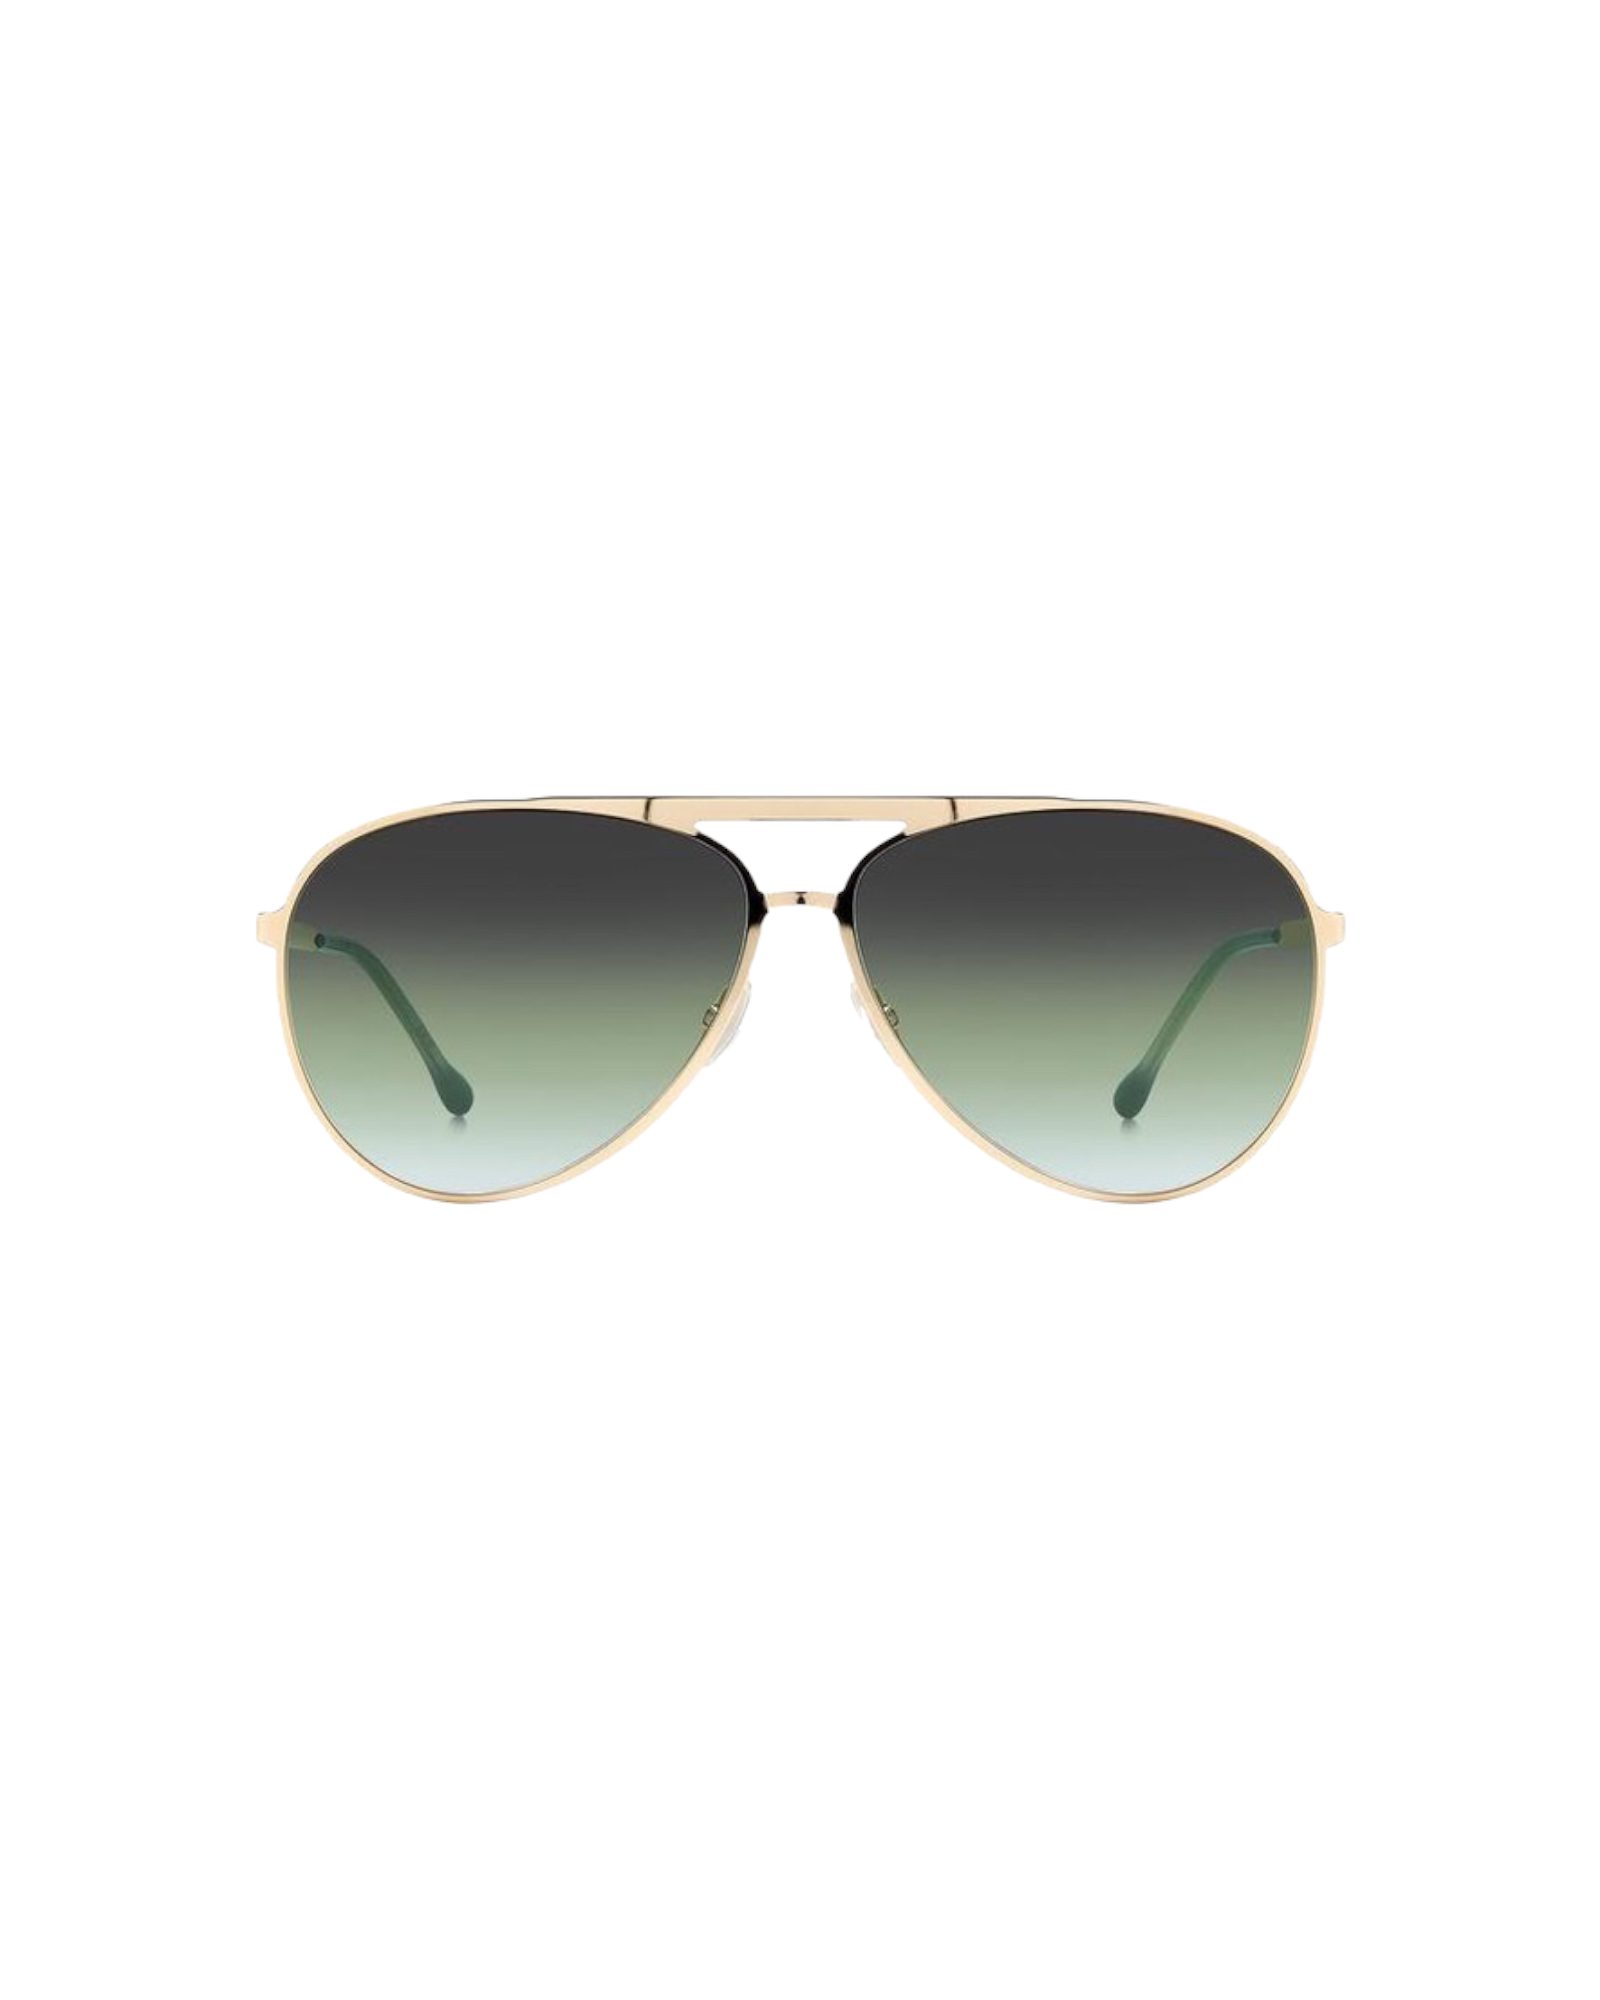 Sonnenbrille, Aviator, green, ISABEL MARANT, IM 0100/S